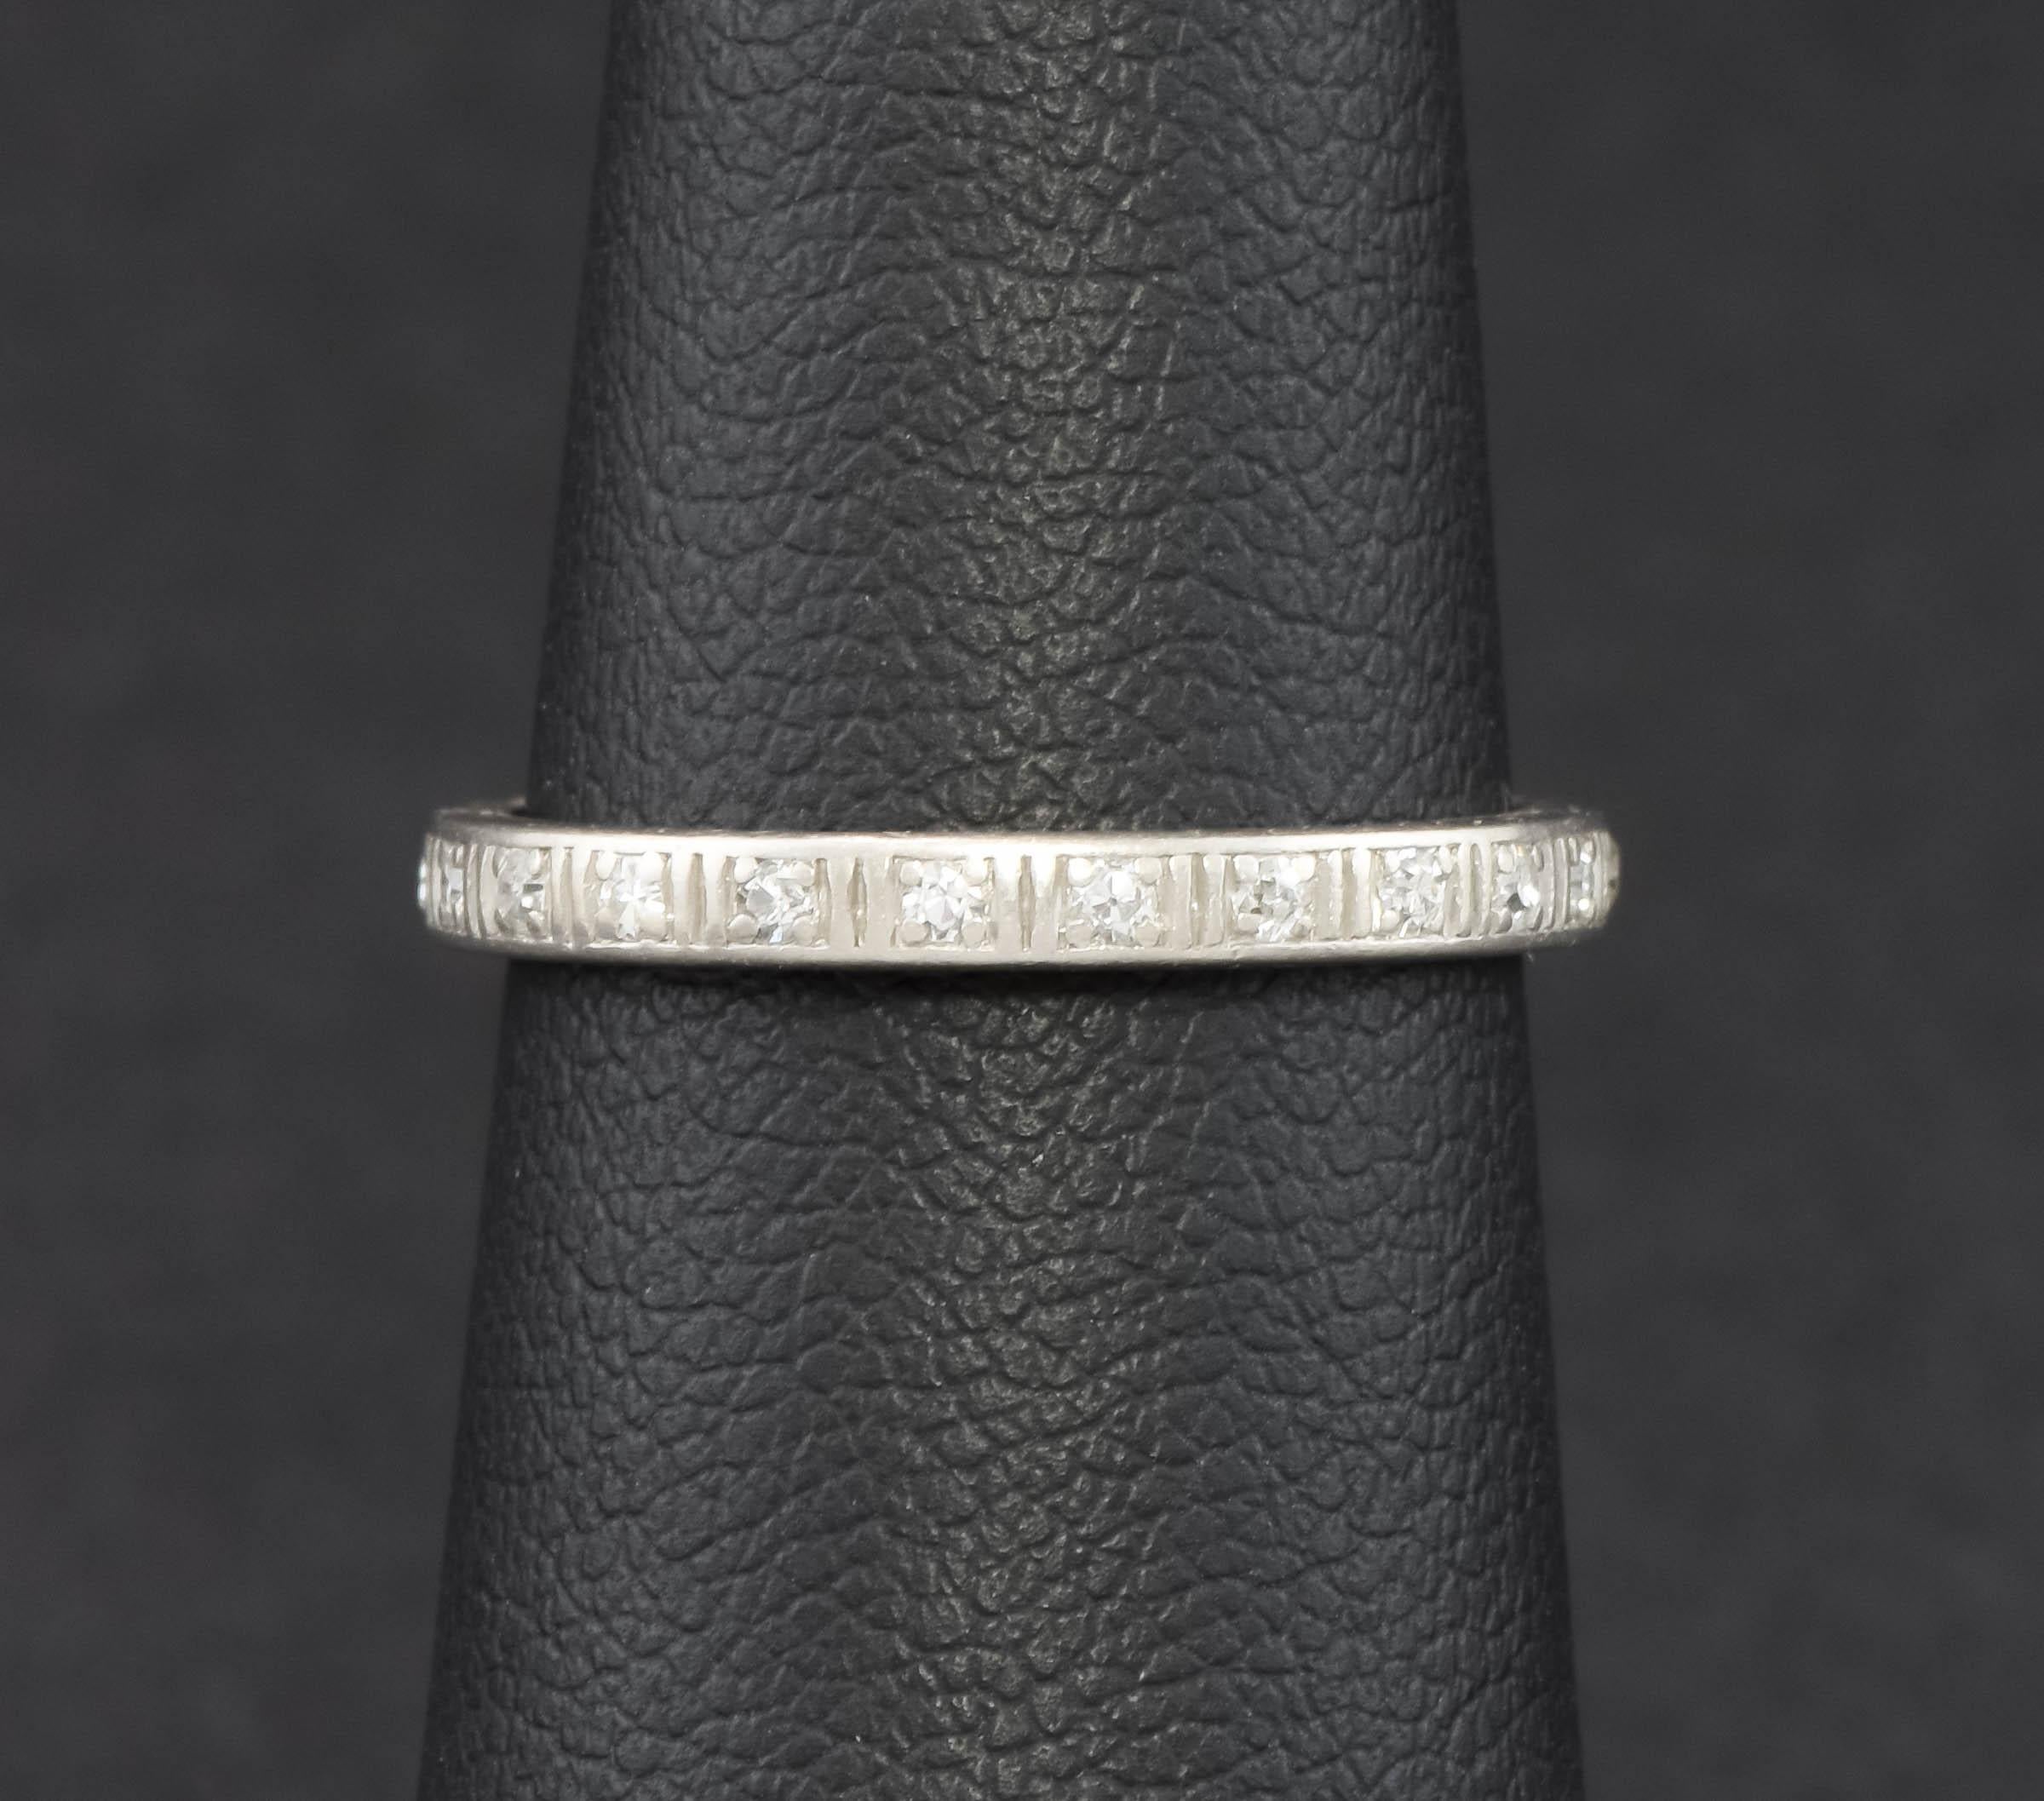 Cette bague d'alliance en diamant de style éternel date de la période Art Déco.

Avec 20 diamants anciens de taille unique sertis autour du mince anneau de platine, le poids total estimé en carats est d'environ 0,165 carats.  Le sertissage des